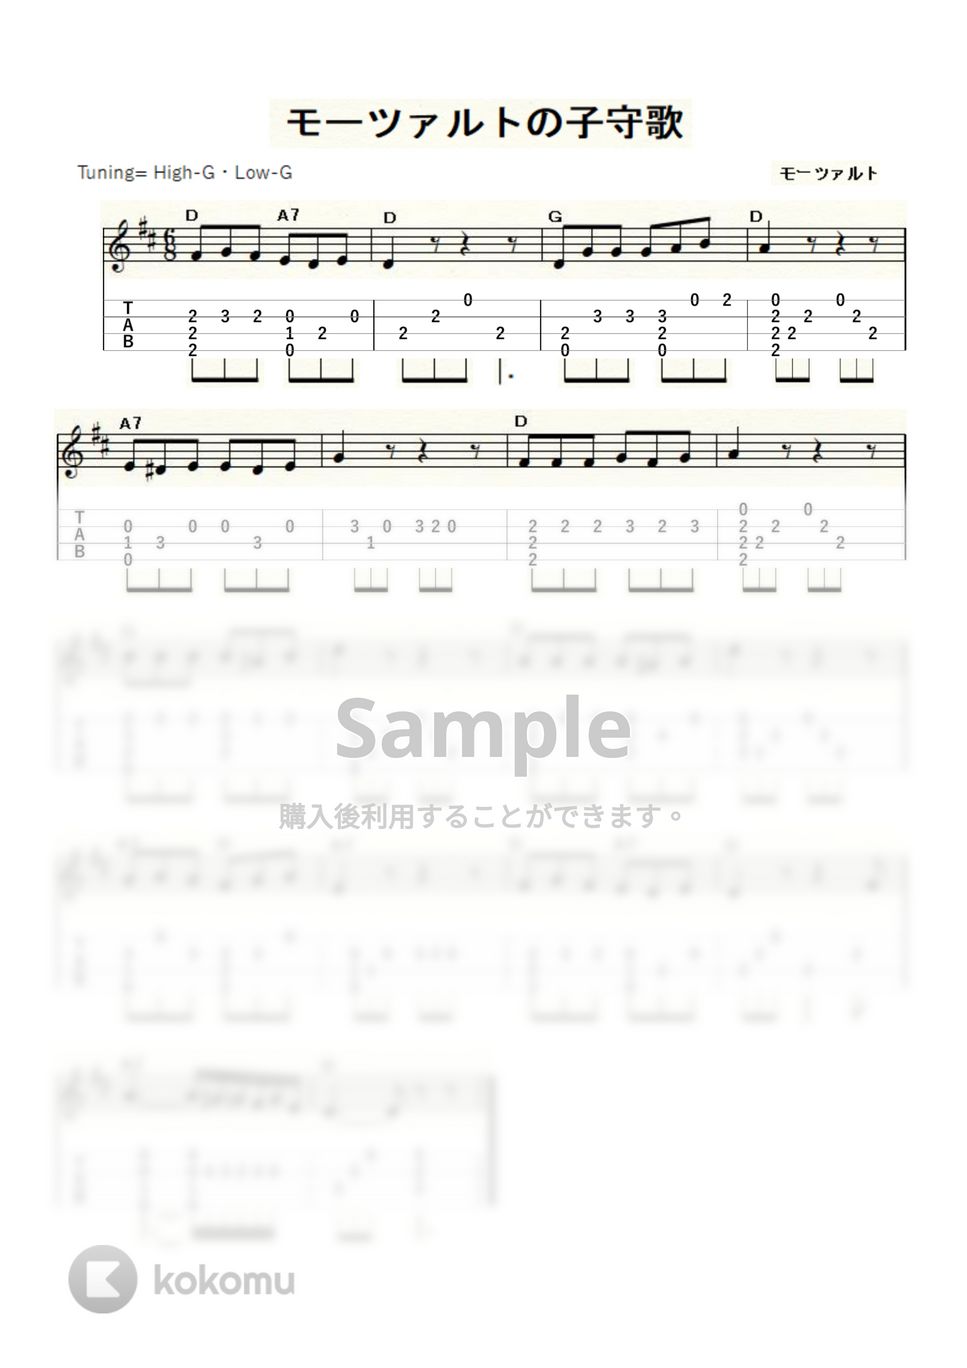 モーツァルト - モーツァルトの子守歌 (ｳｸﾚﾚｿﾛ / High-G・Low-G / 初級～中級) by ukulelepapa